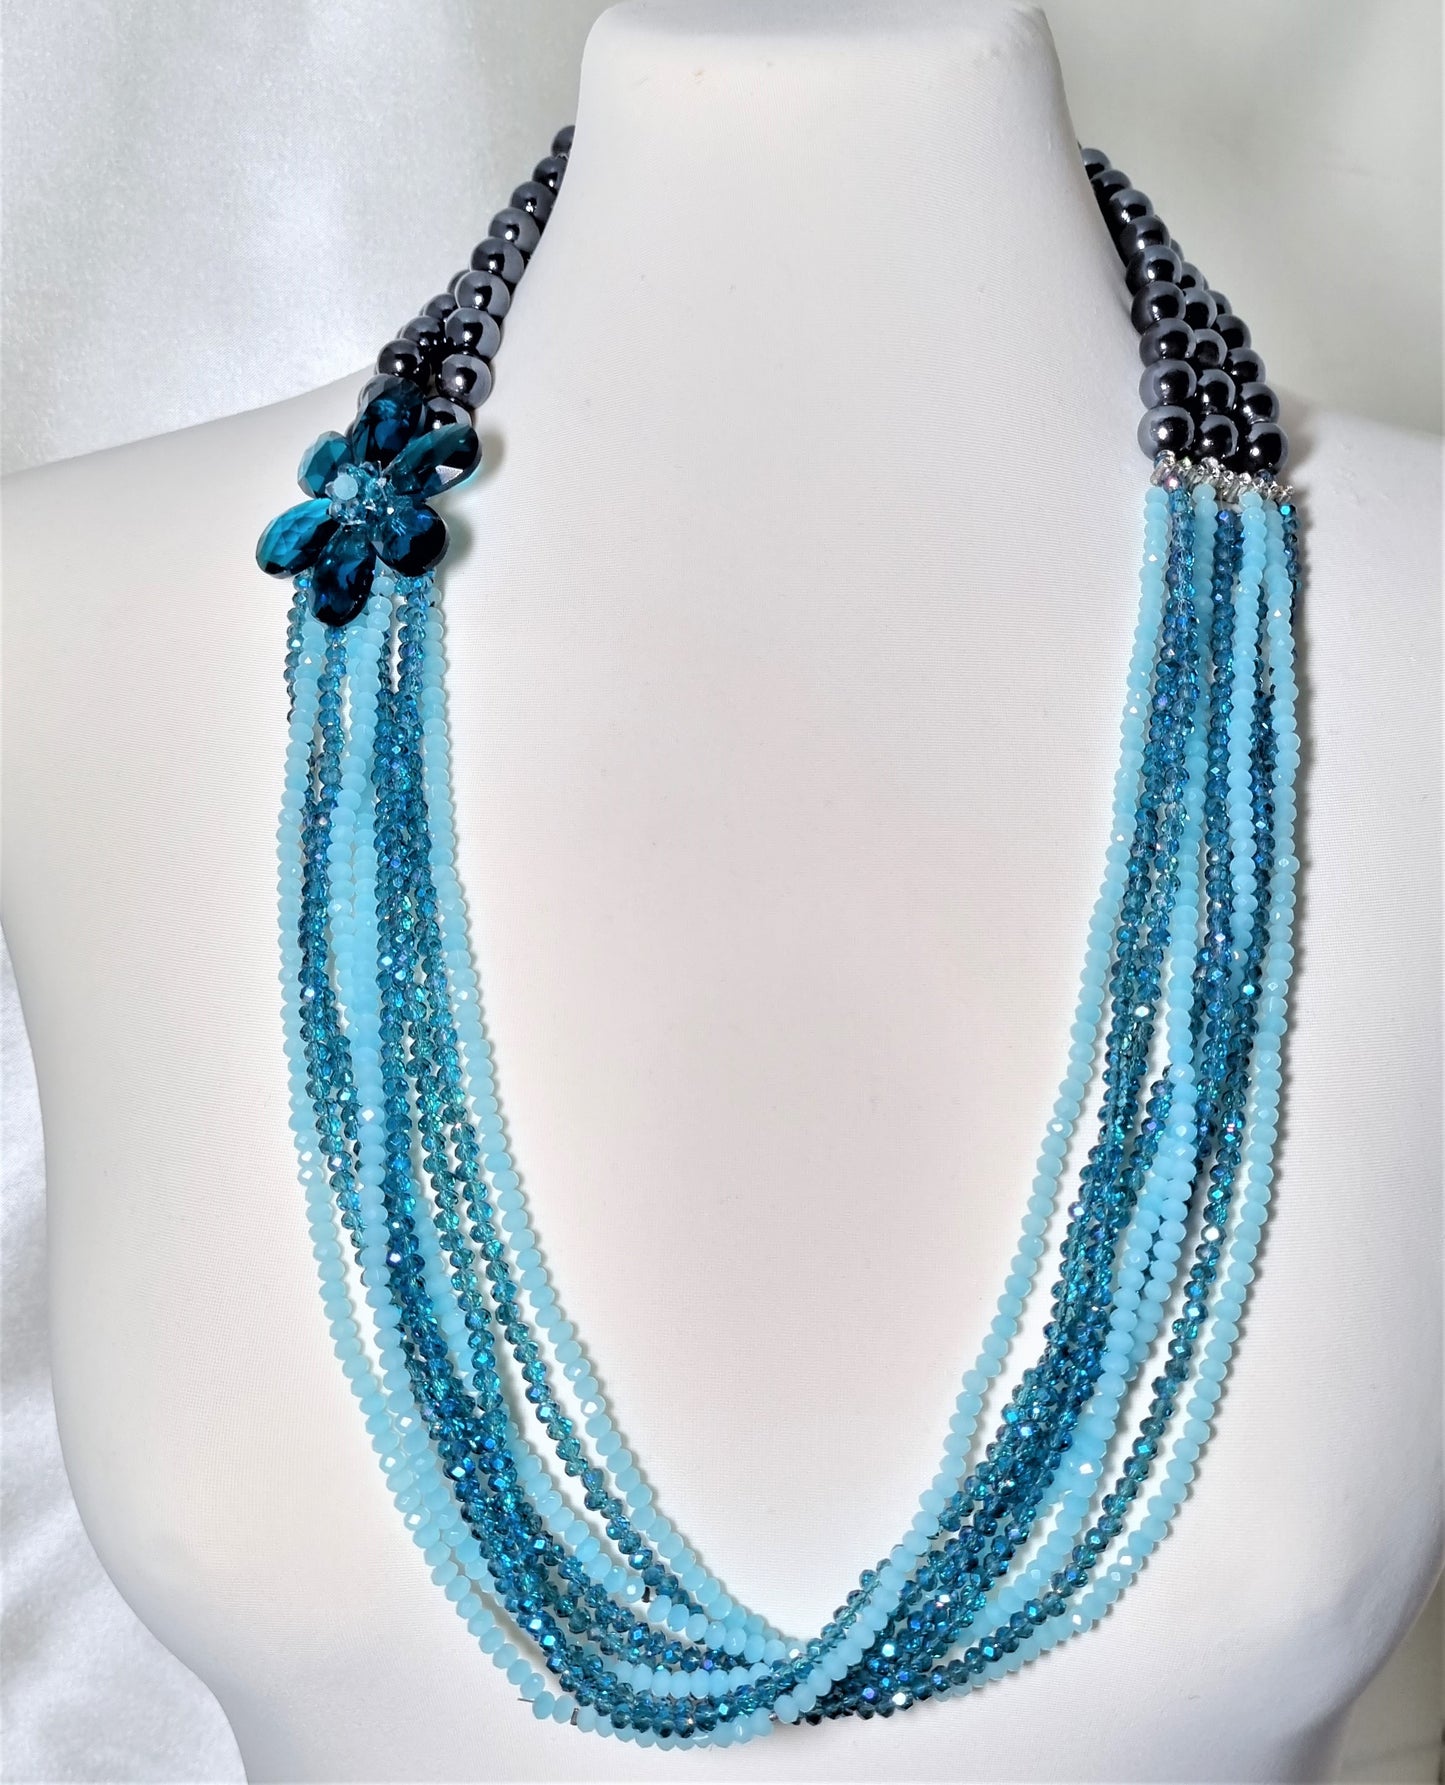 Collana SOPHIA i colori .027 perle ceramica, molti fili di cristalli azzurri e celeste.